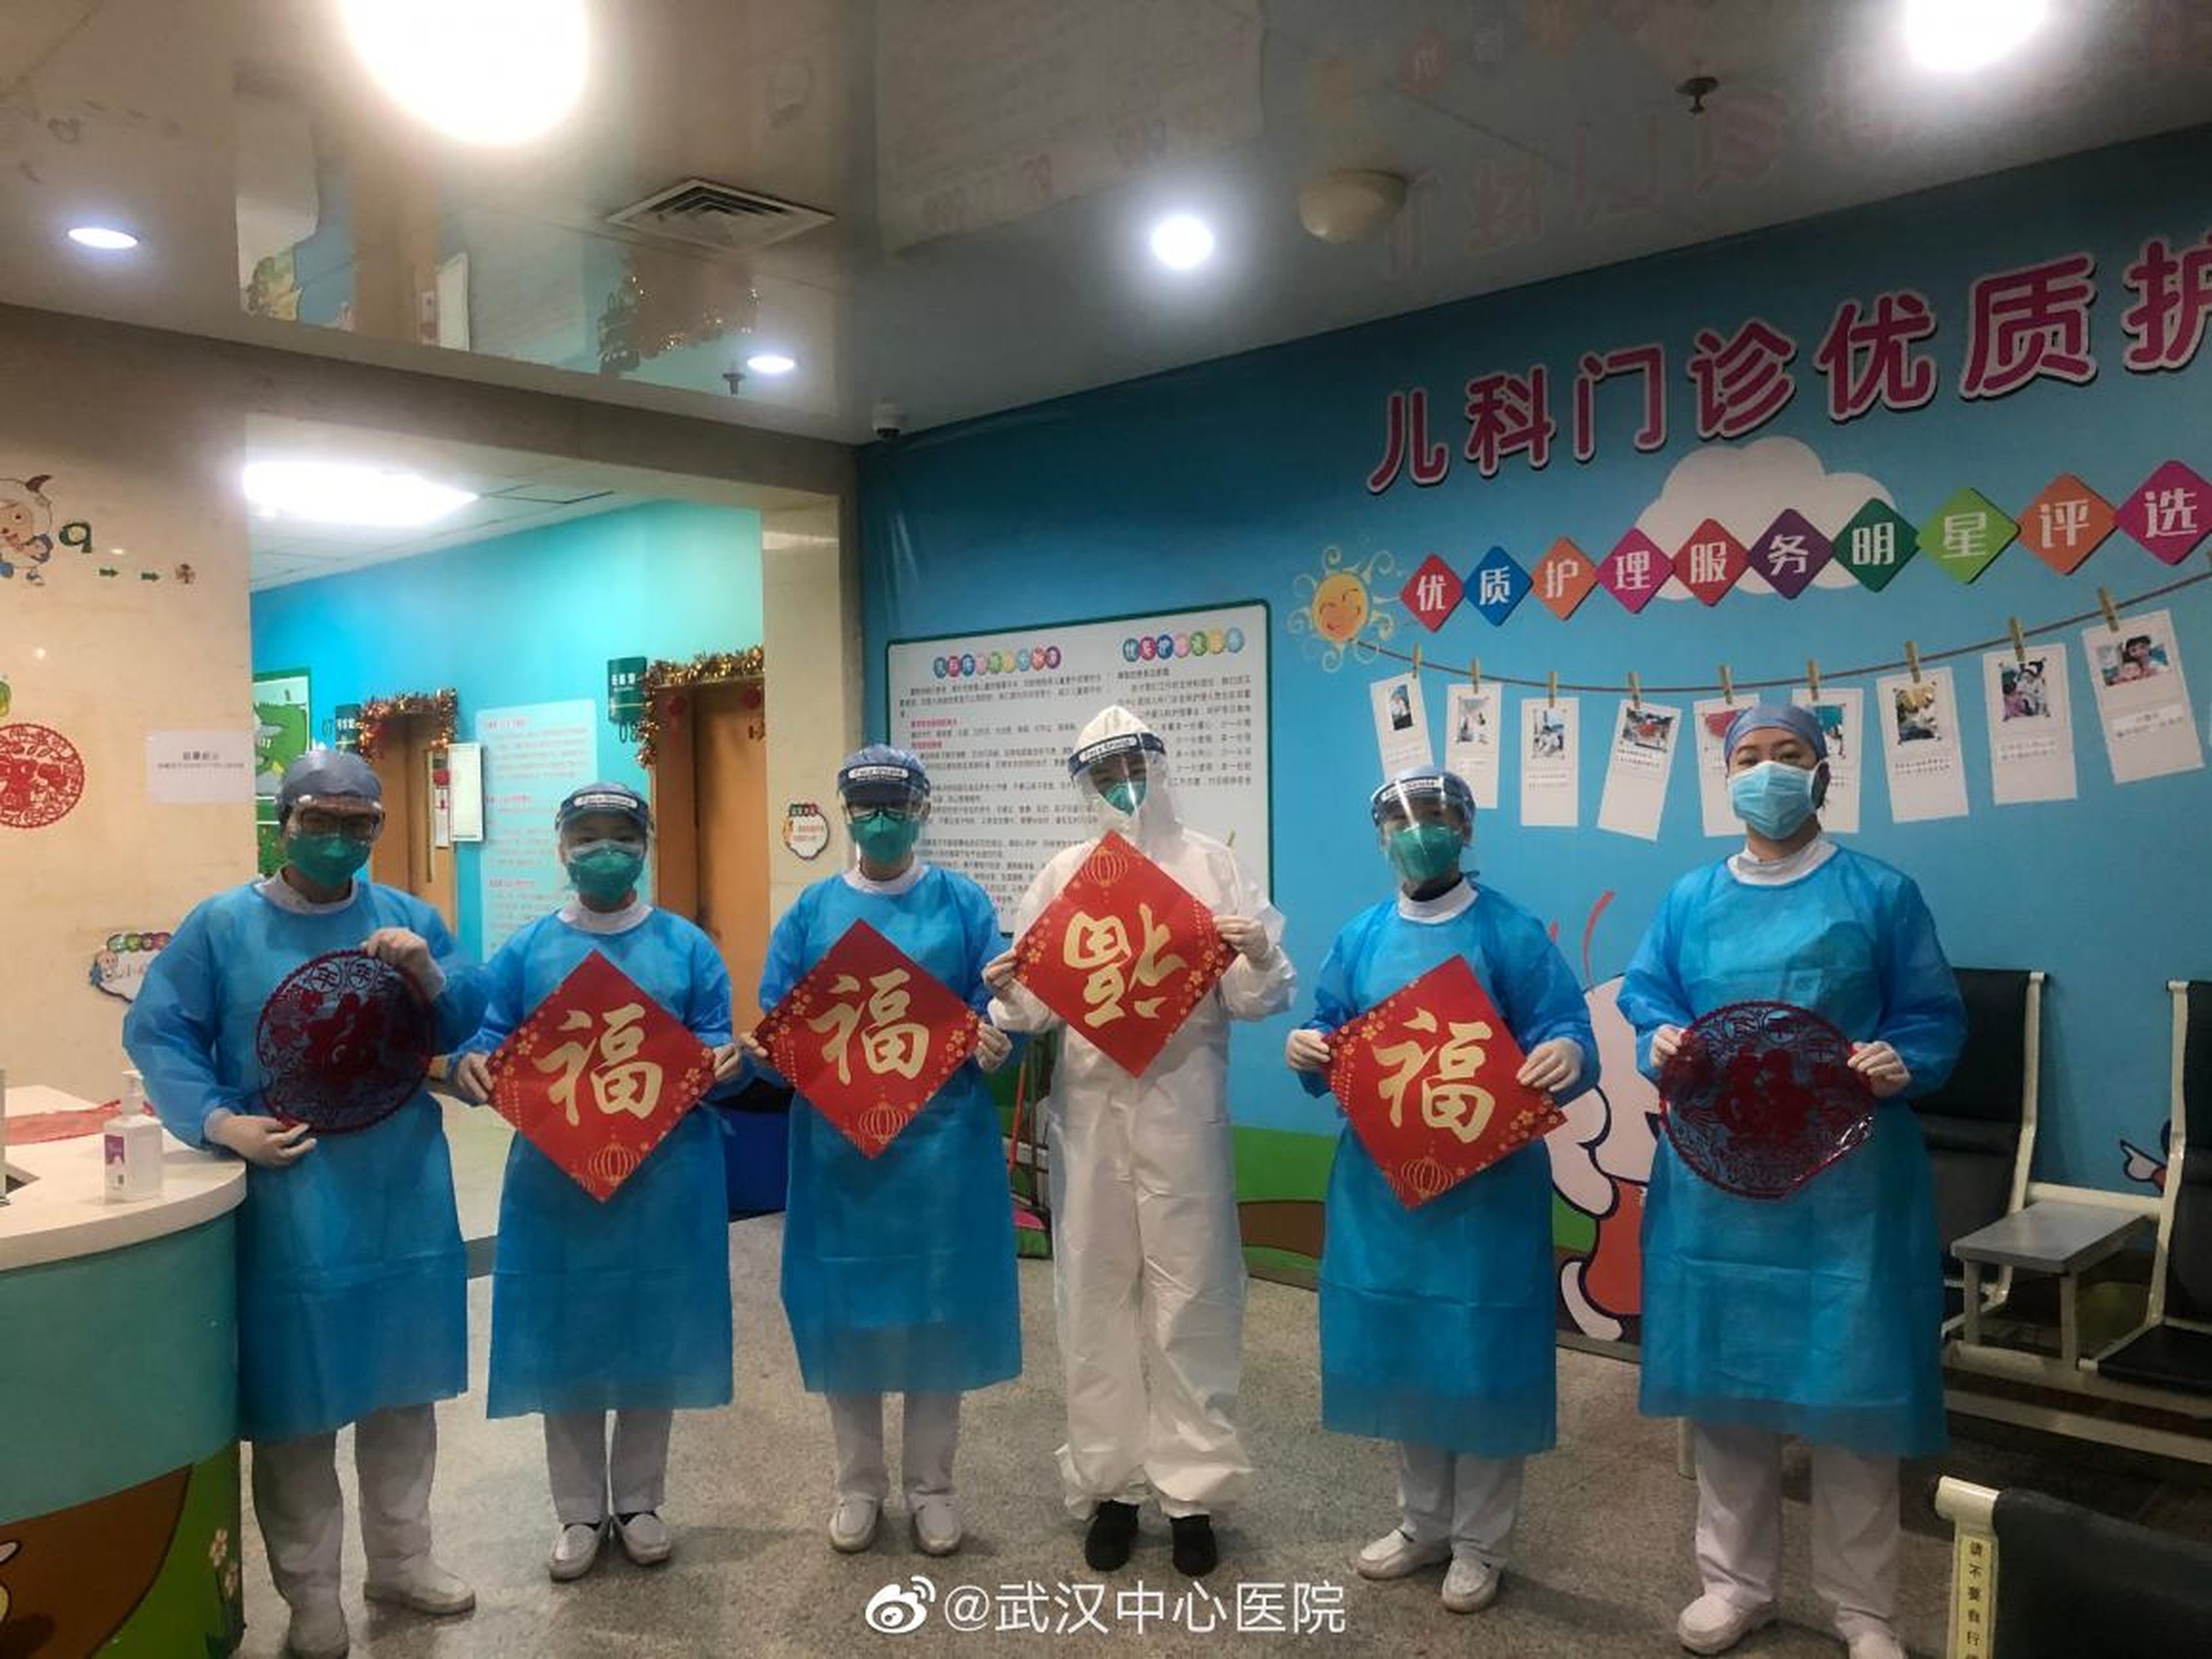 Una imagen publicada en las redes sociales el 25 de enero por el Hospital Central de Wuhan muestra a trabajadores médicos llevando símbolos del Año Nuevo lunar.